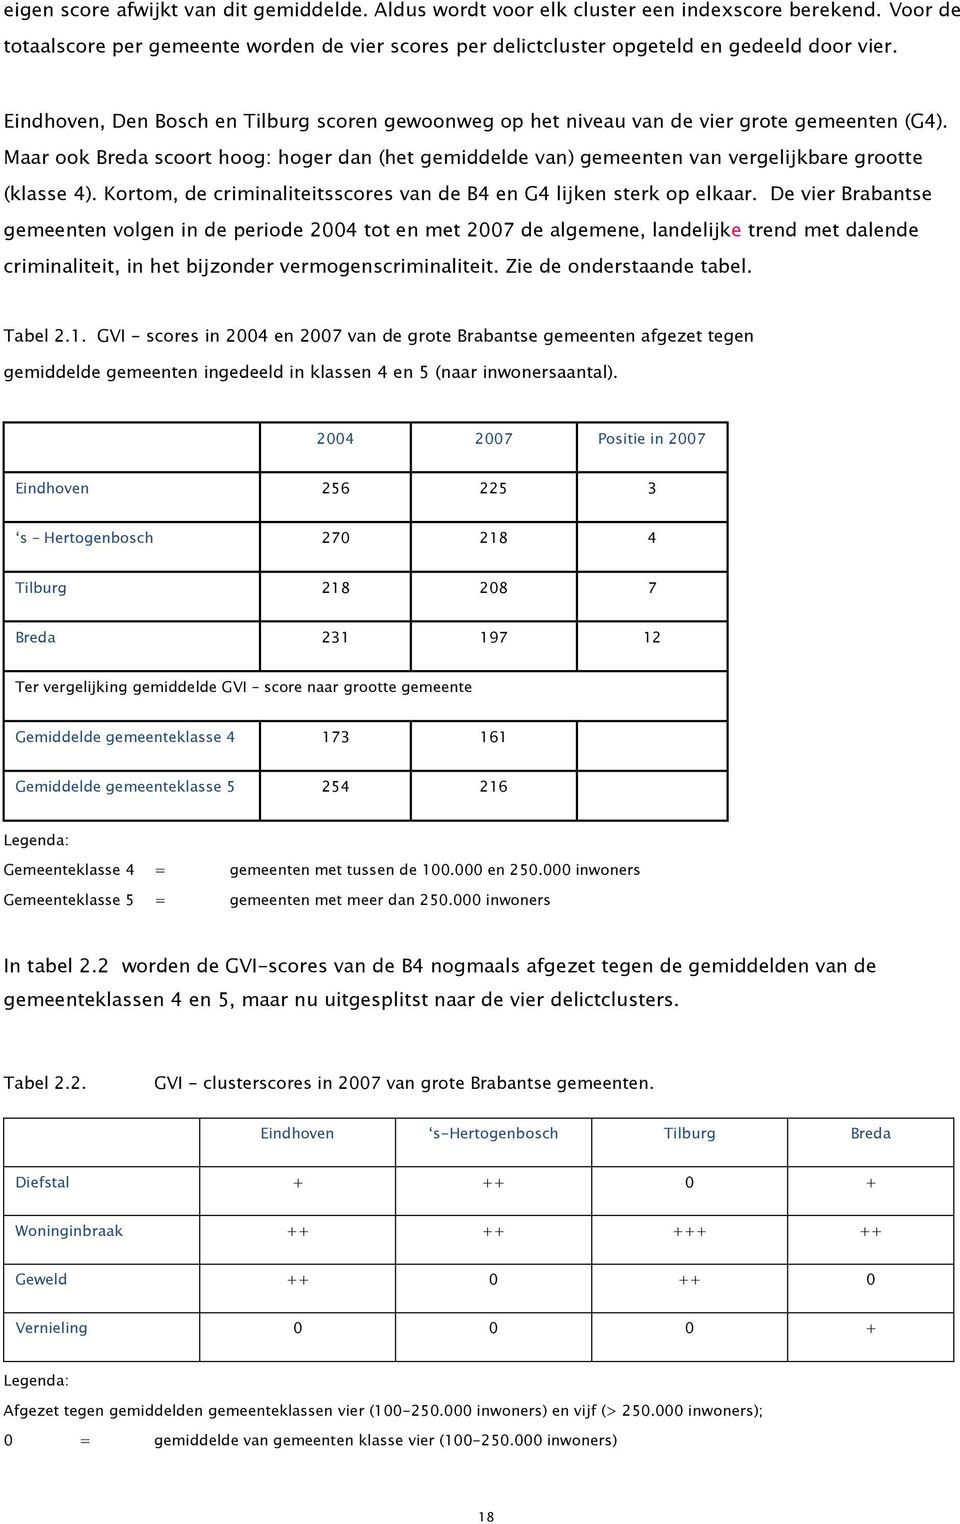 Maar ook Breda scoort hoog: hoger dan (het gemiddelde van) gemeenten van vergelijkbare grootte (klasse 4). Kortom, de criminaliteitsscores van de B4 en G4 lijken sterk op elkaar.